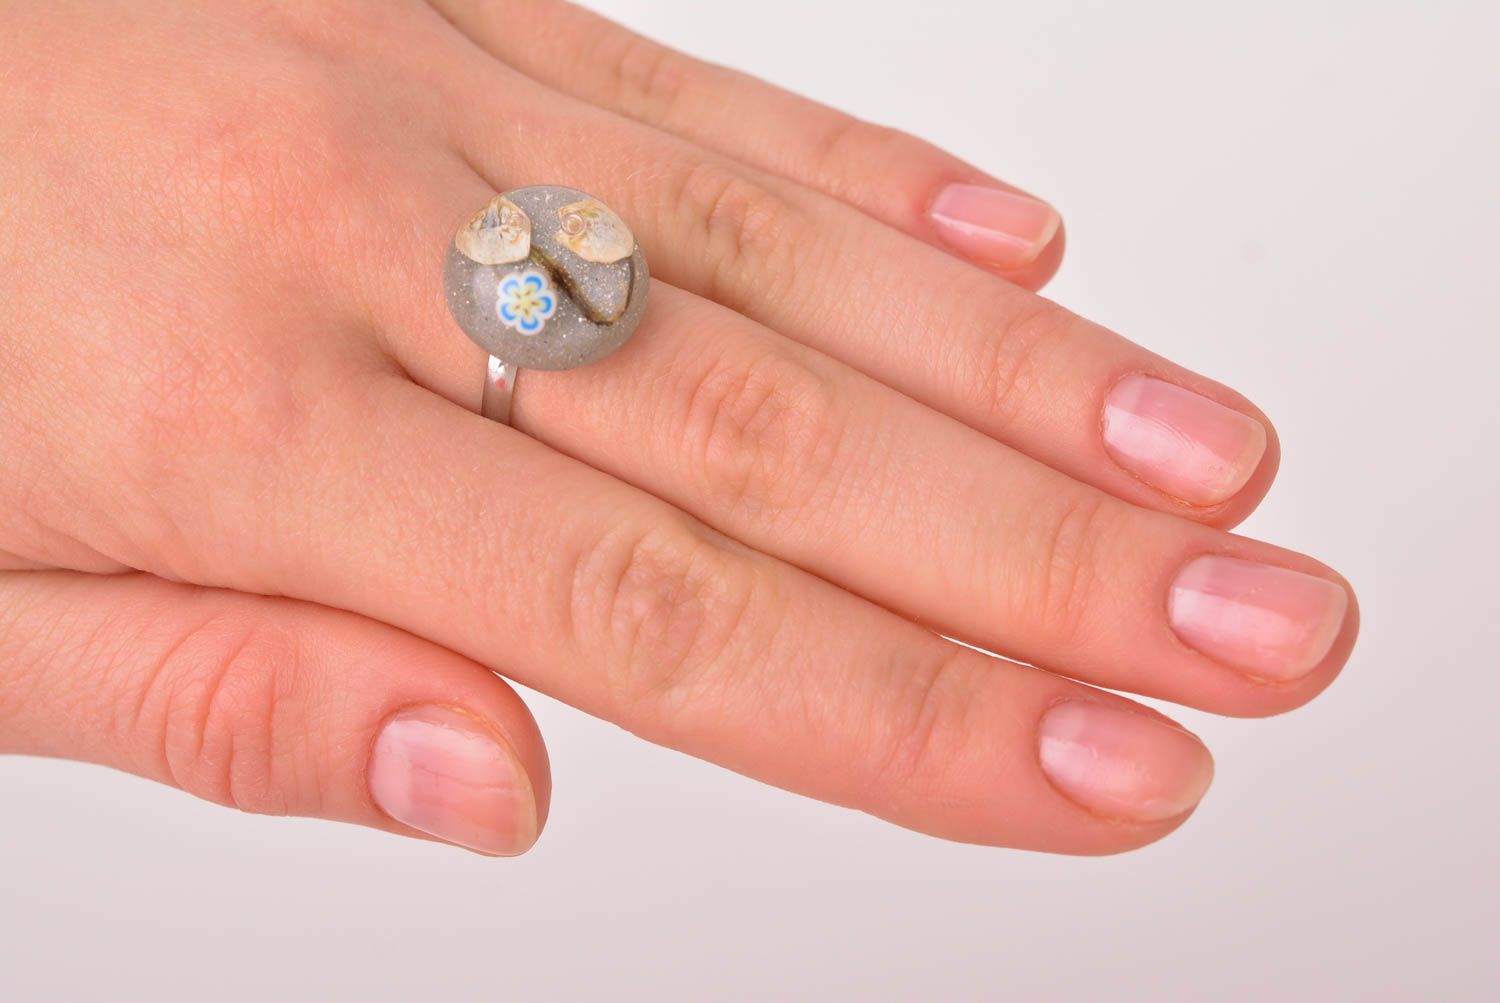 Handmade flower designer ring massive beautiful ring unusual feminine jewelry photo 4